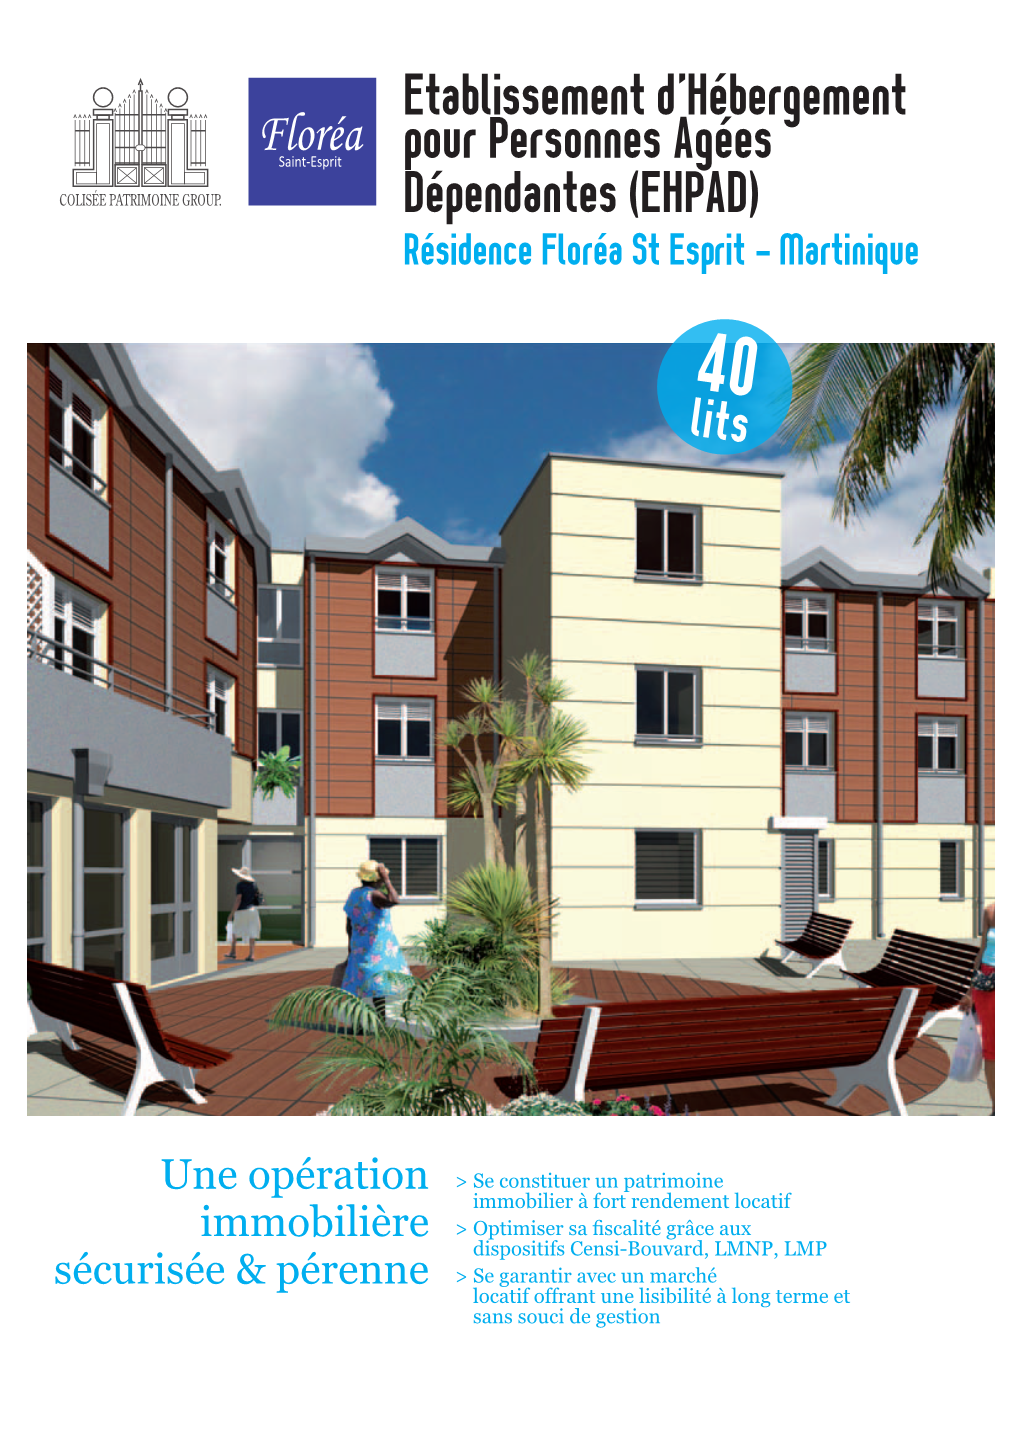 EHPAD) Résidence Floréa St Esprit - Martinique 40 Lits